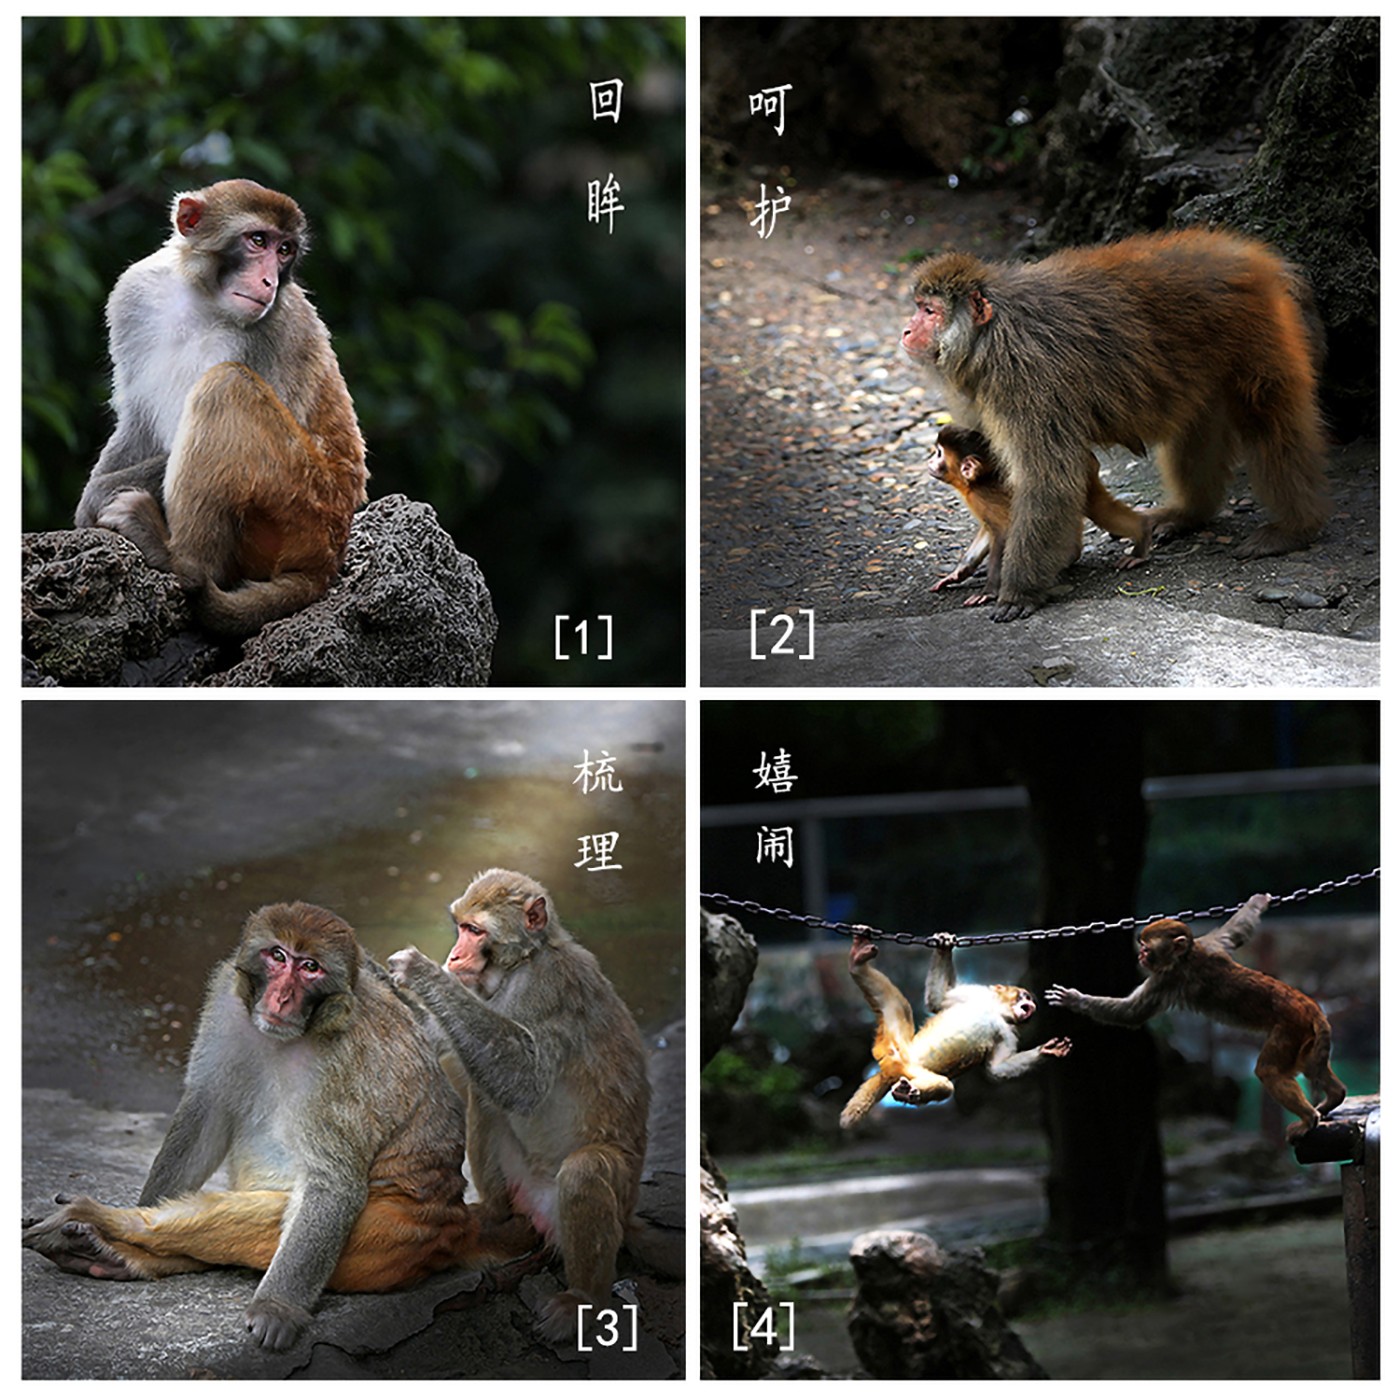 092：[和睦相处]组照动物类作者：王勇作品描述：拍摄于2017年天山野生动物园。灵性的动物总是能赋予人们美好的想象，尤其是猴子，它还能带给人们相互关爰、友好上向的力量。.jpg